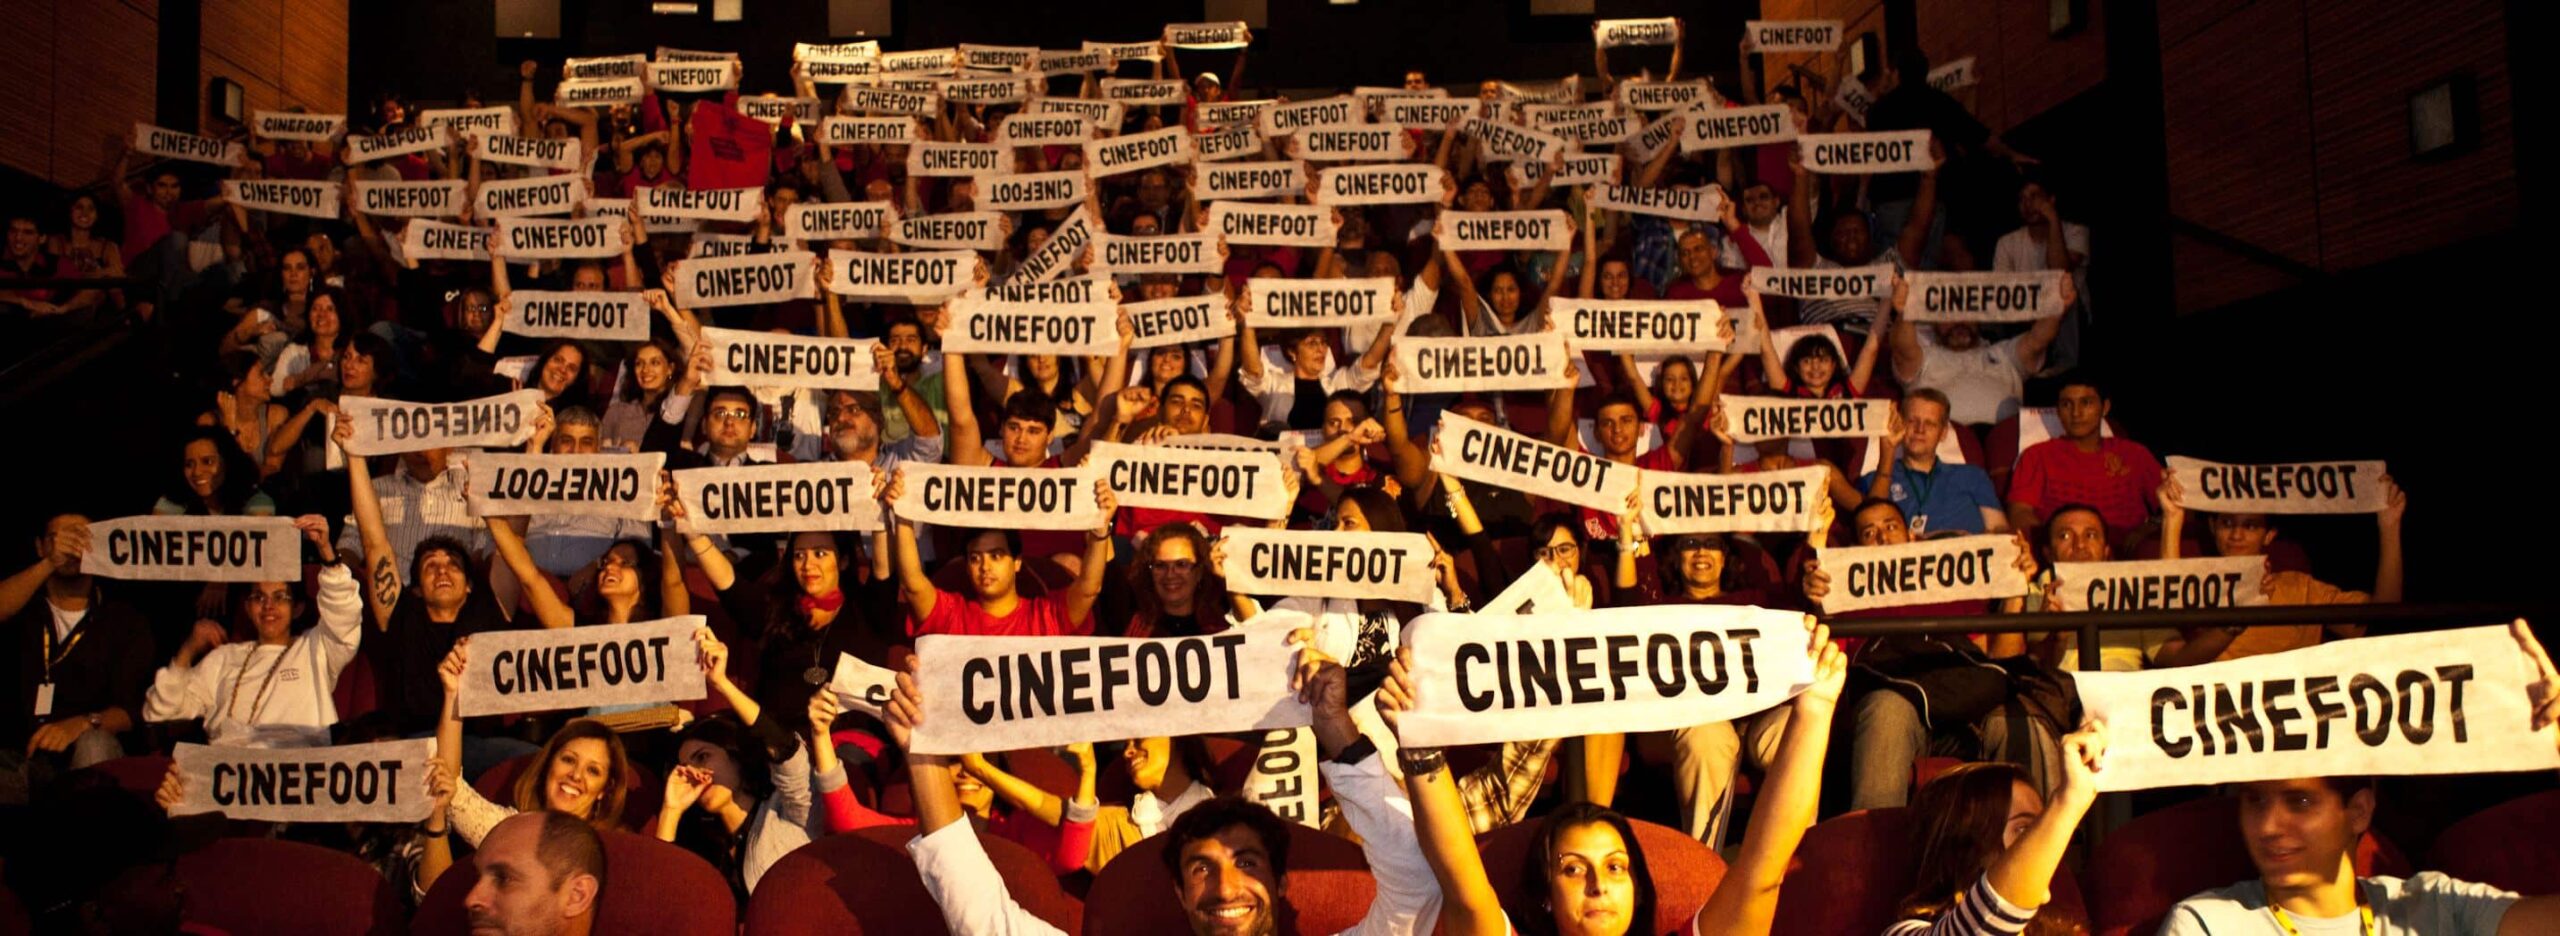 CINEfoot – Festival de Cinema de Futebol prorroga inscrição